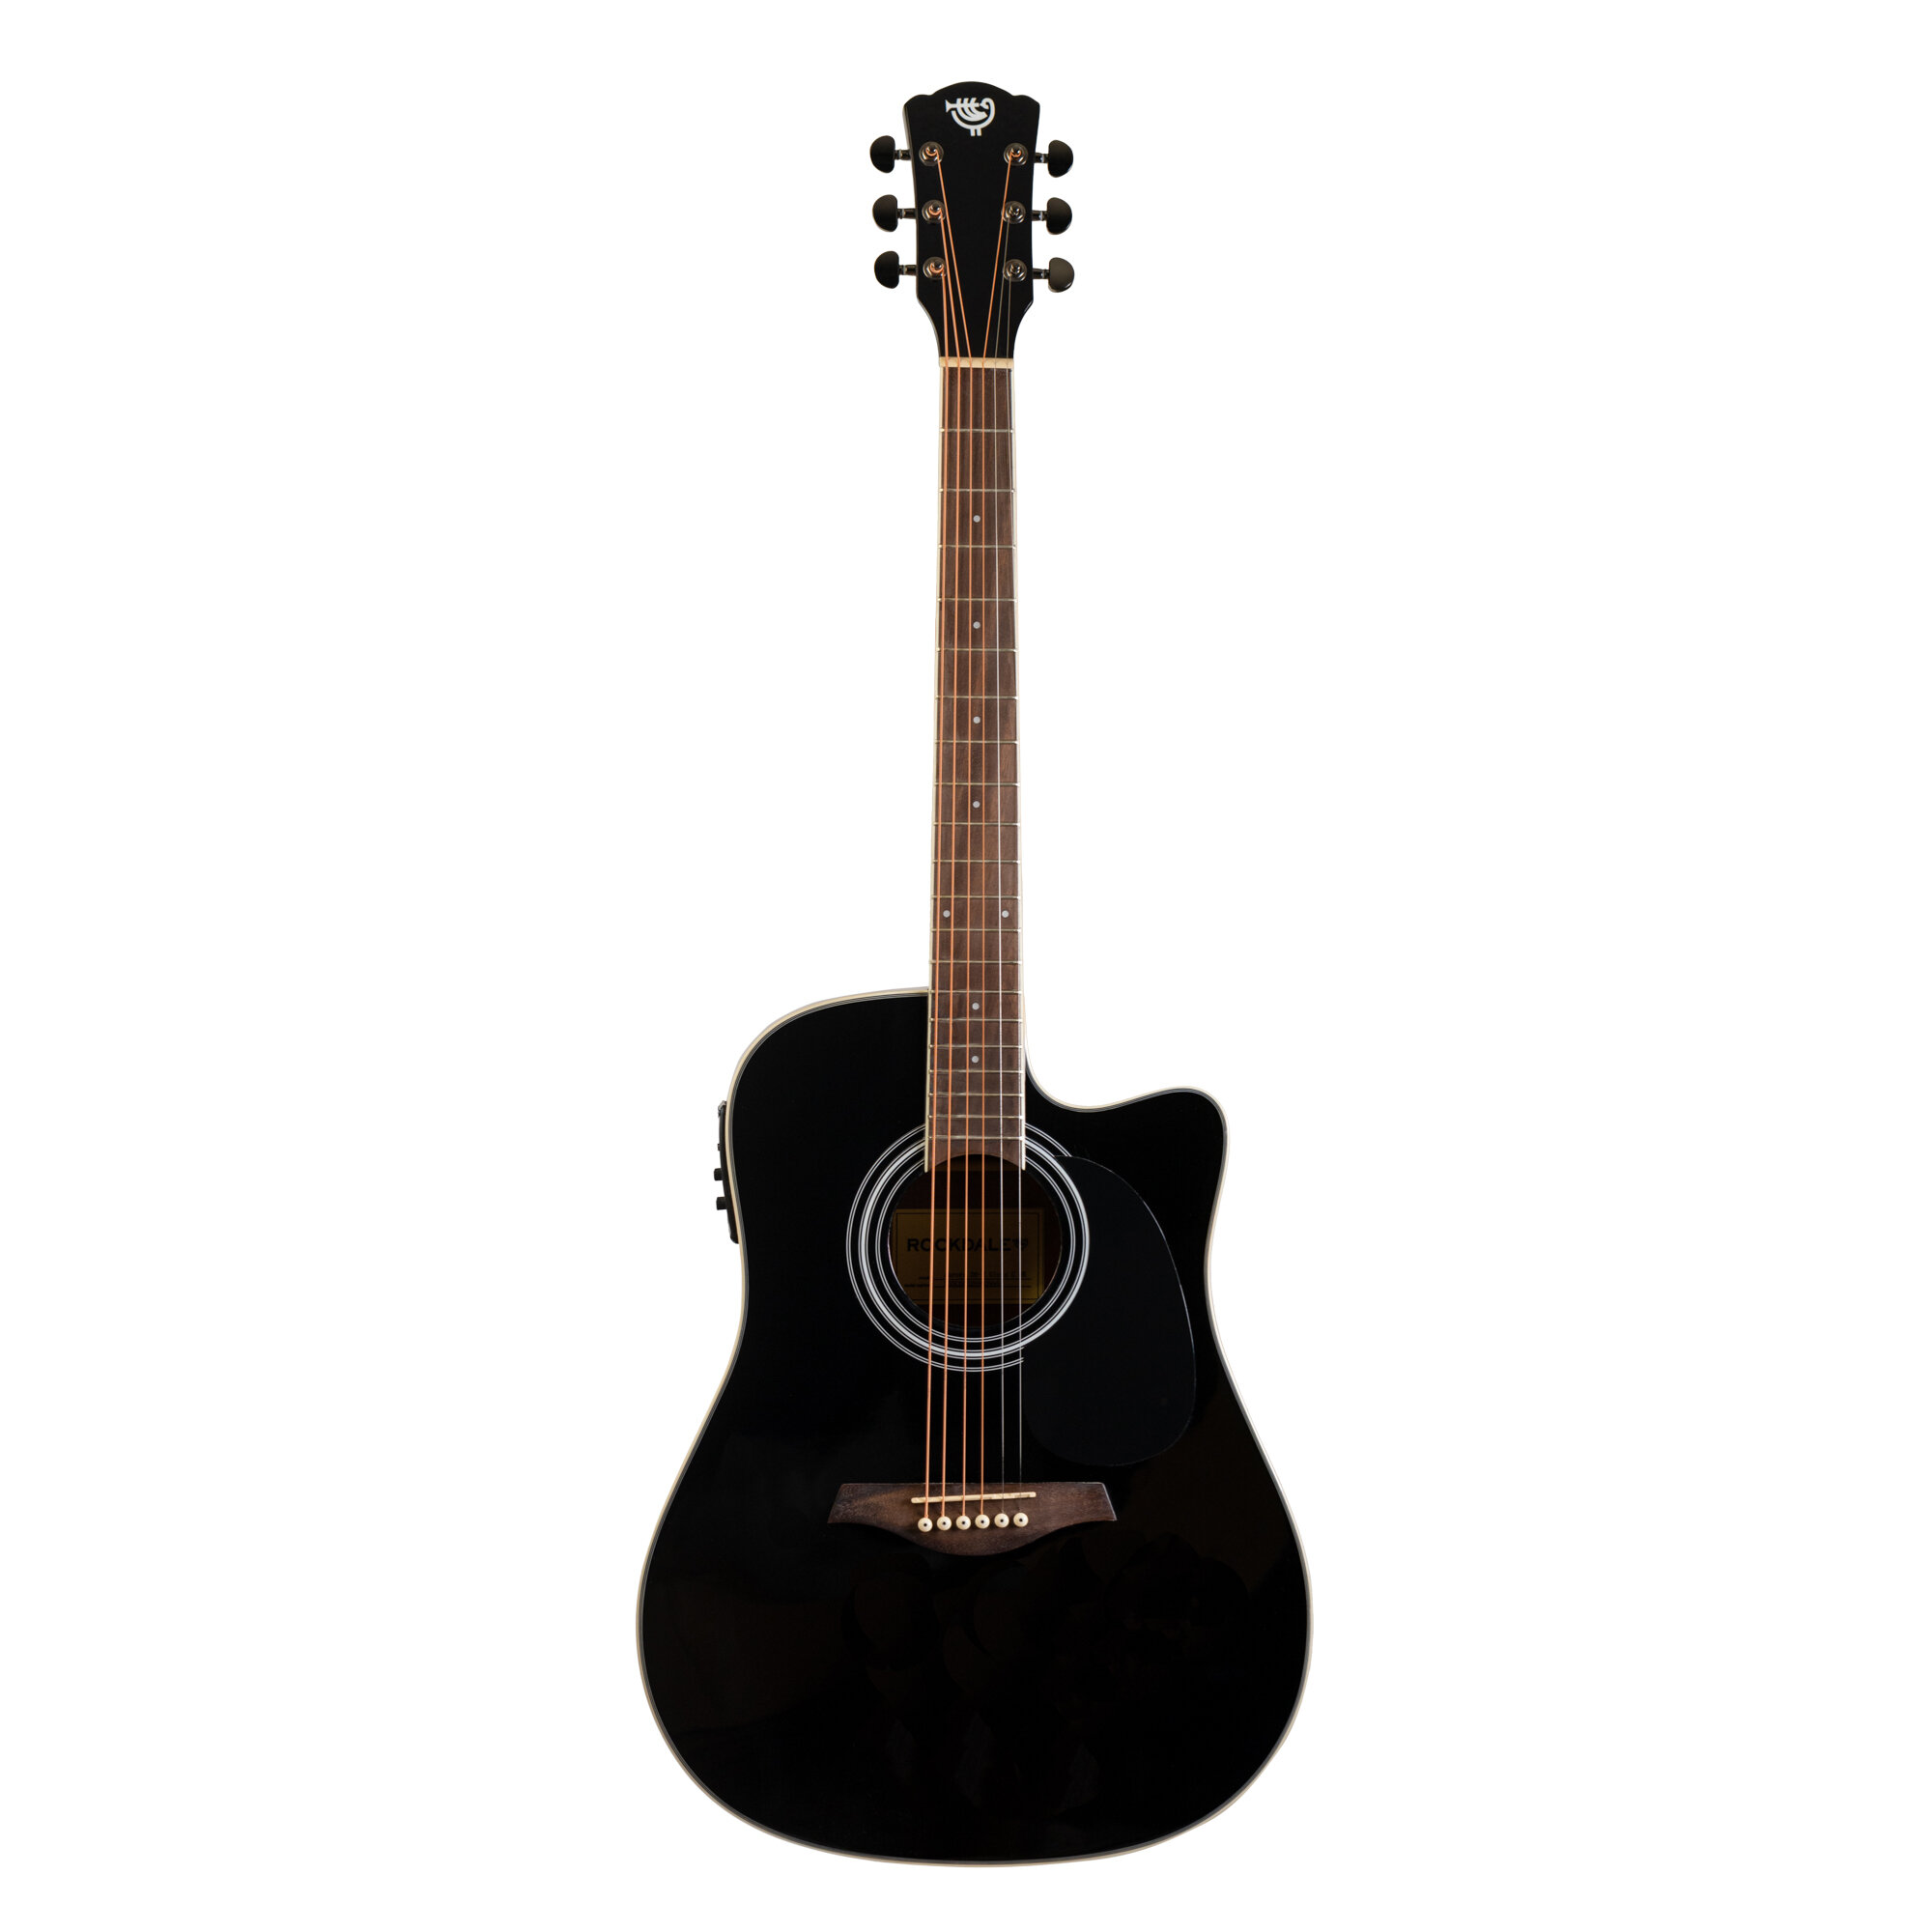 Rockdale Aurora D6 C BK E Gloss электроакустическая гитара дредноут с вырезом цвет черный глянцевое покрытие